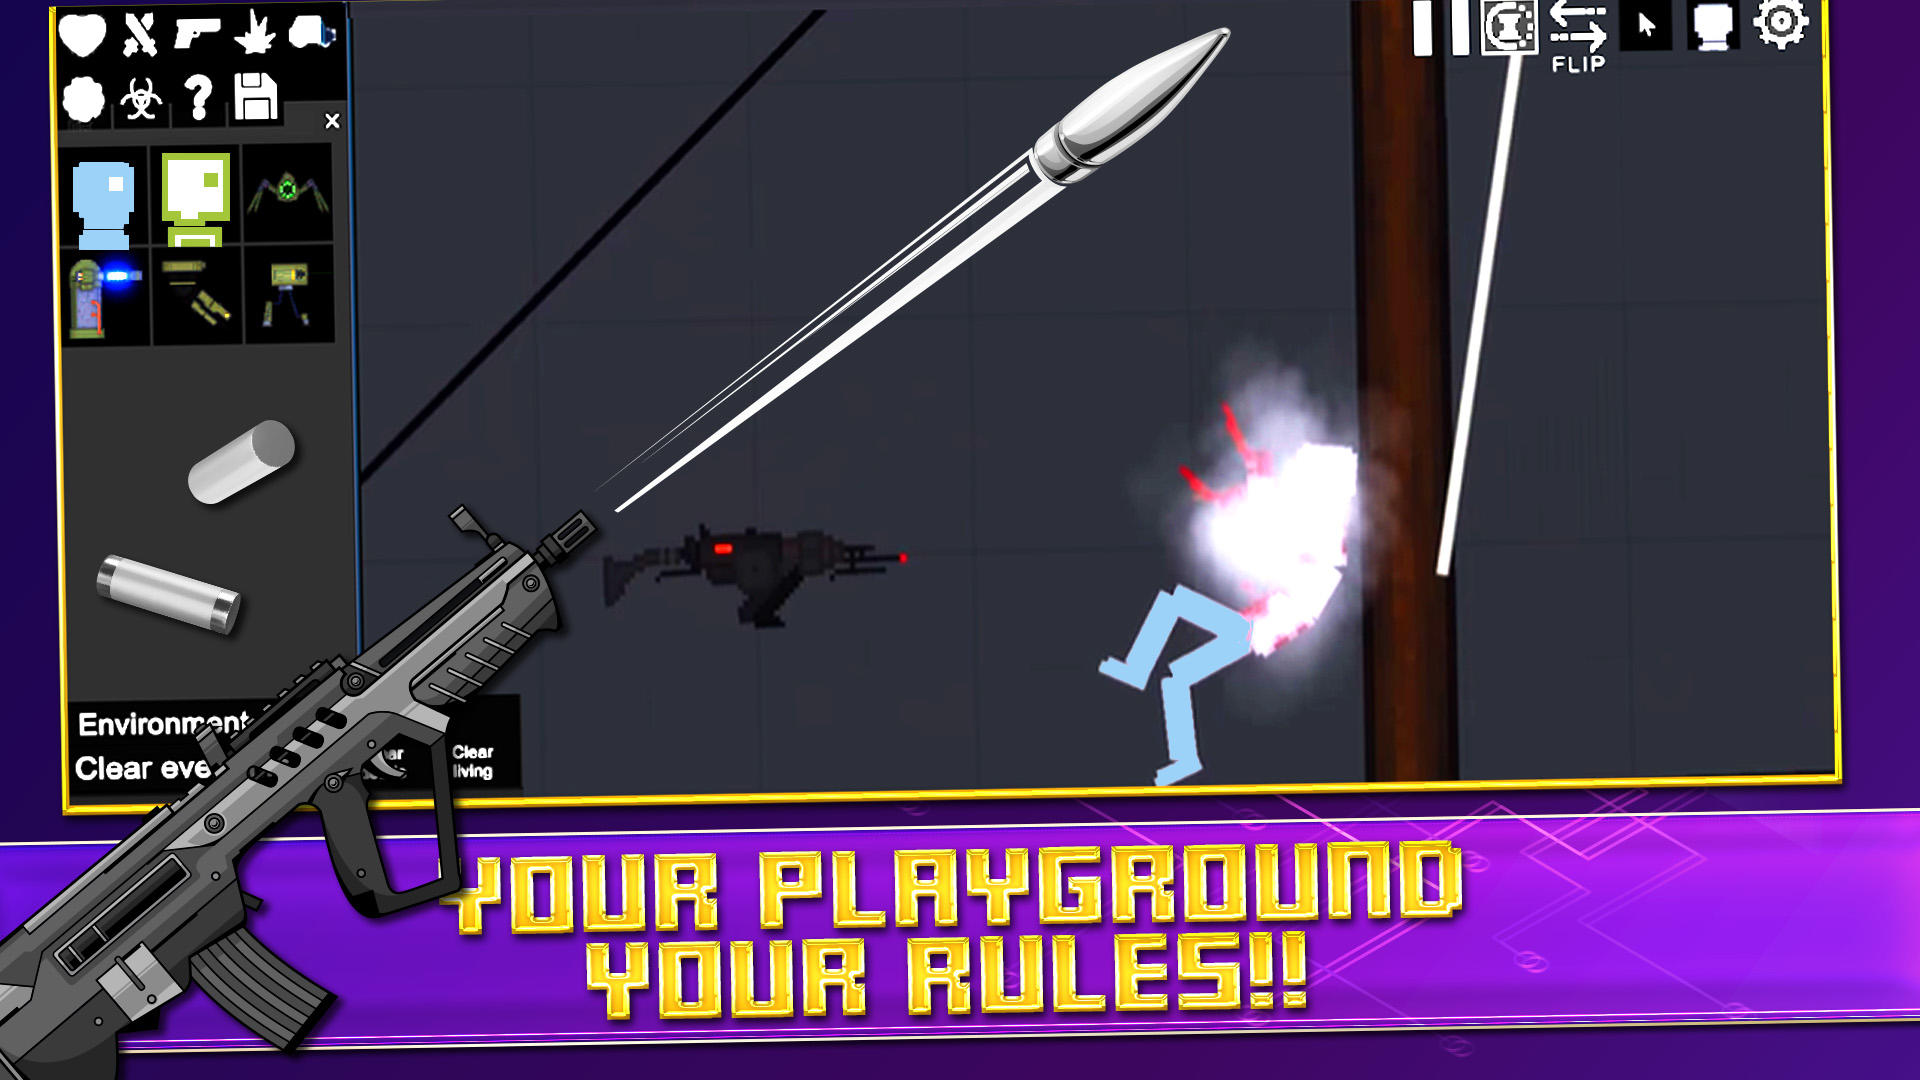 Screenshot of Pixel Playground